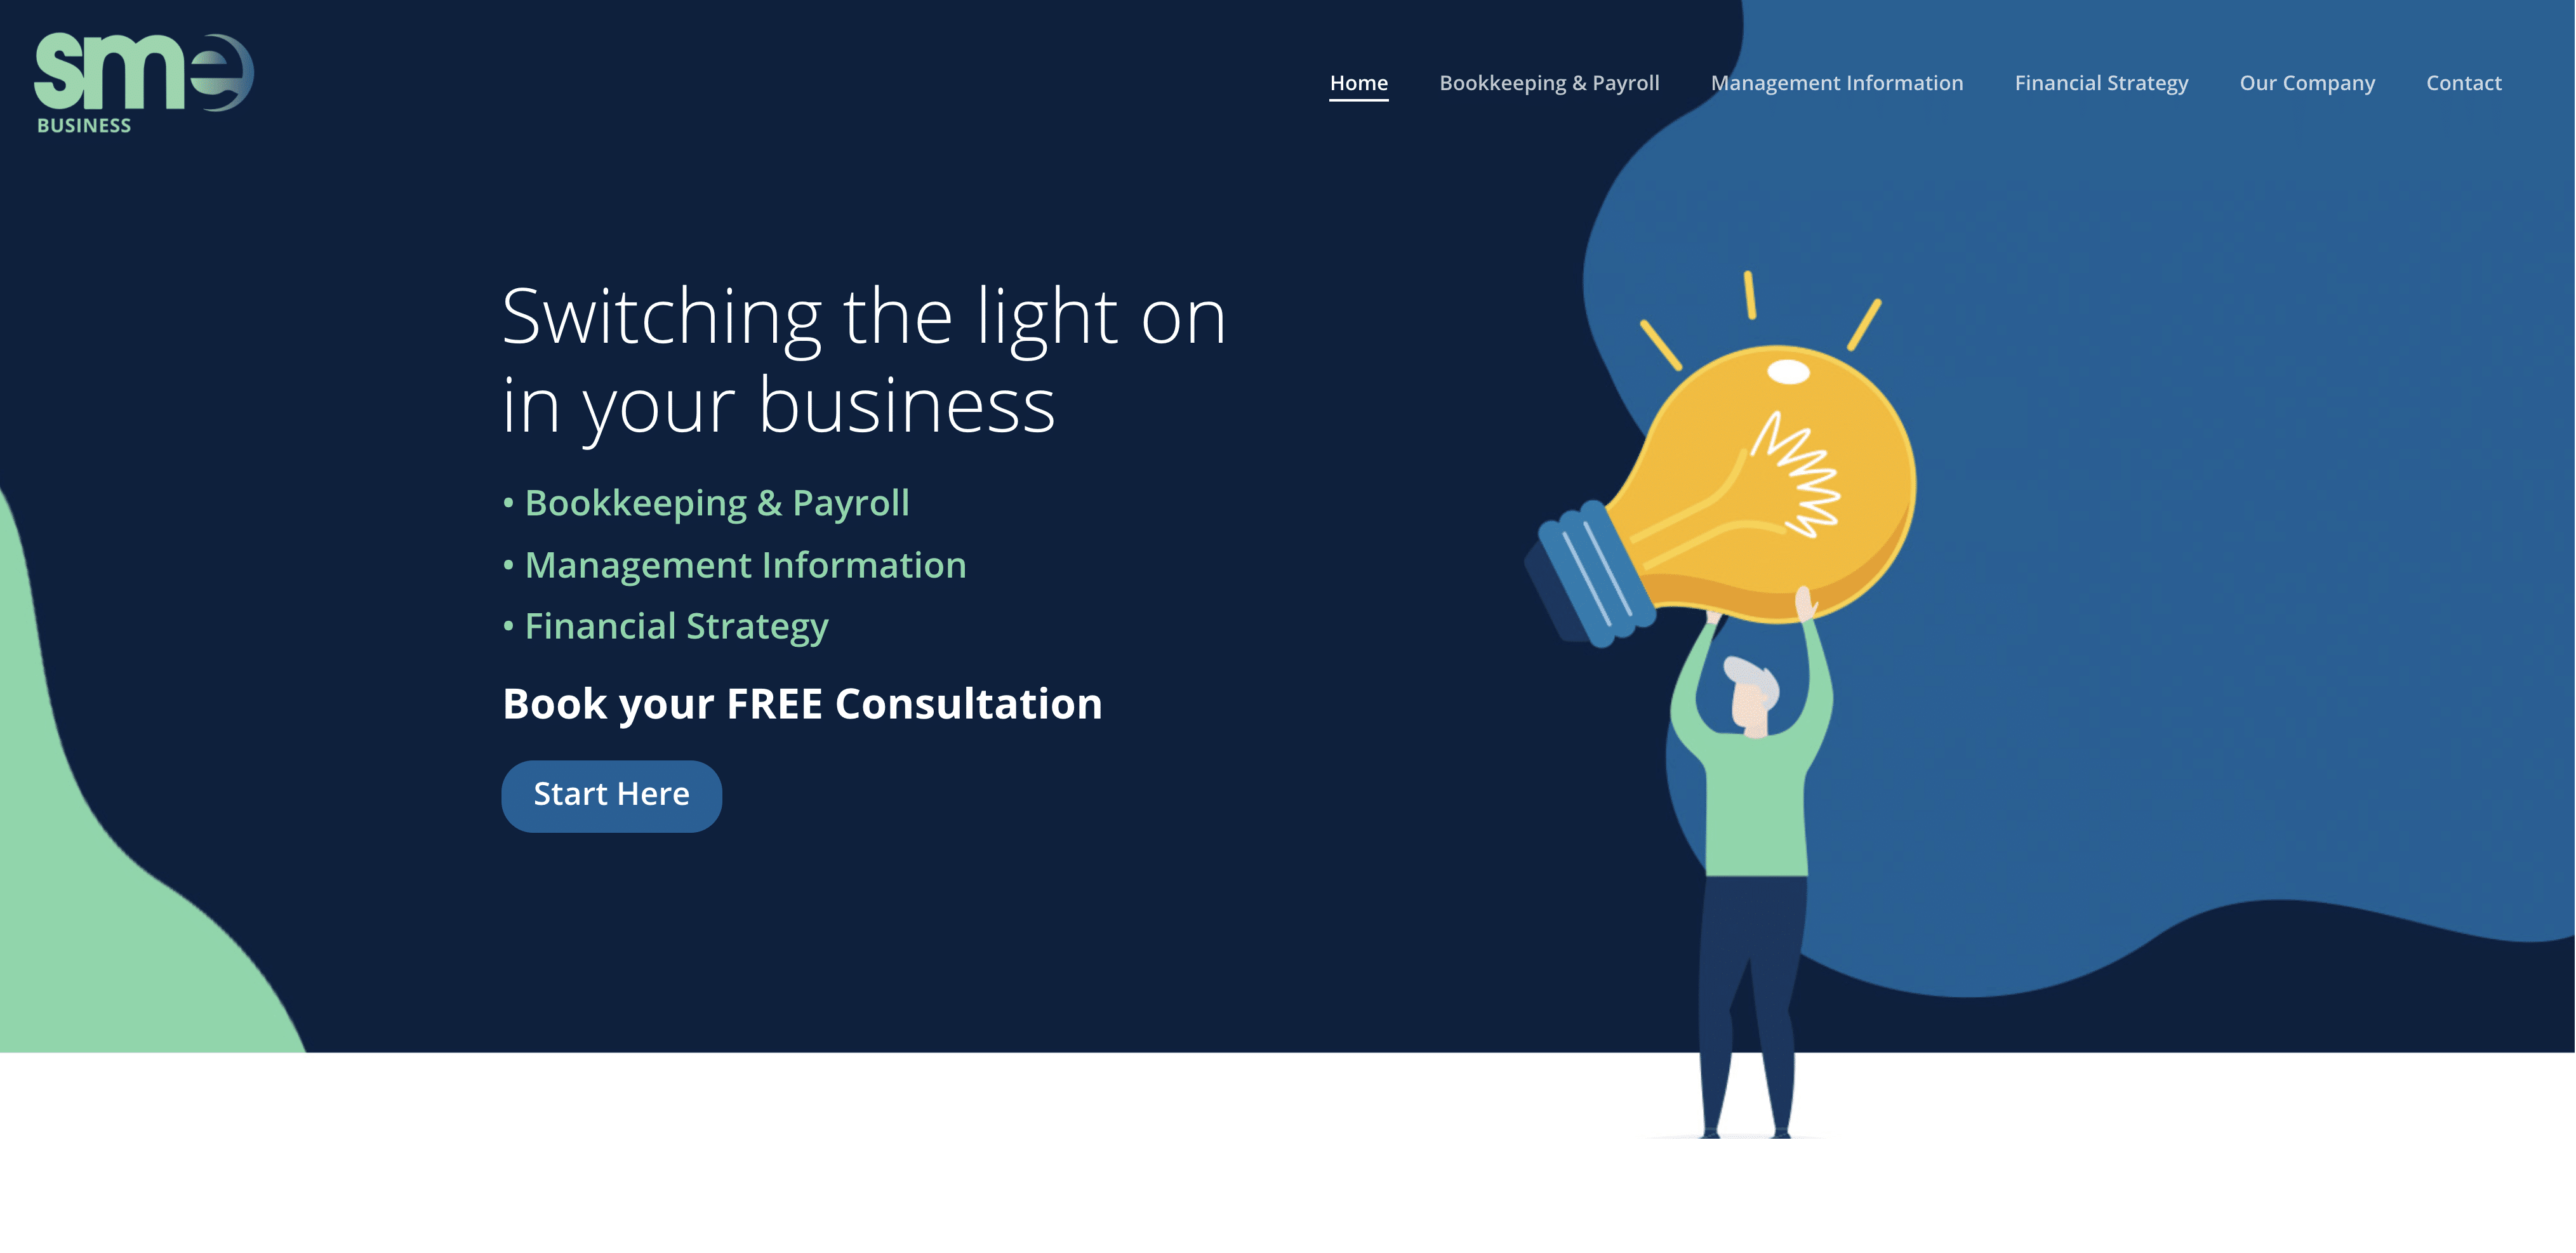 Outstanding business website design